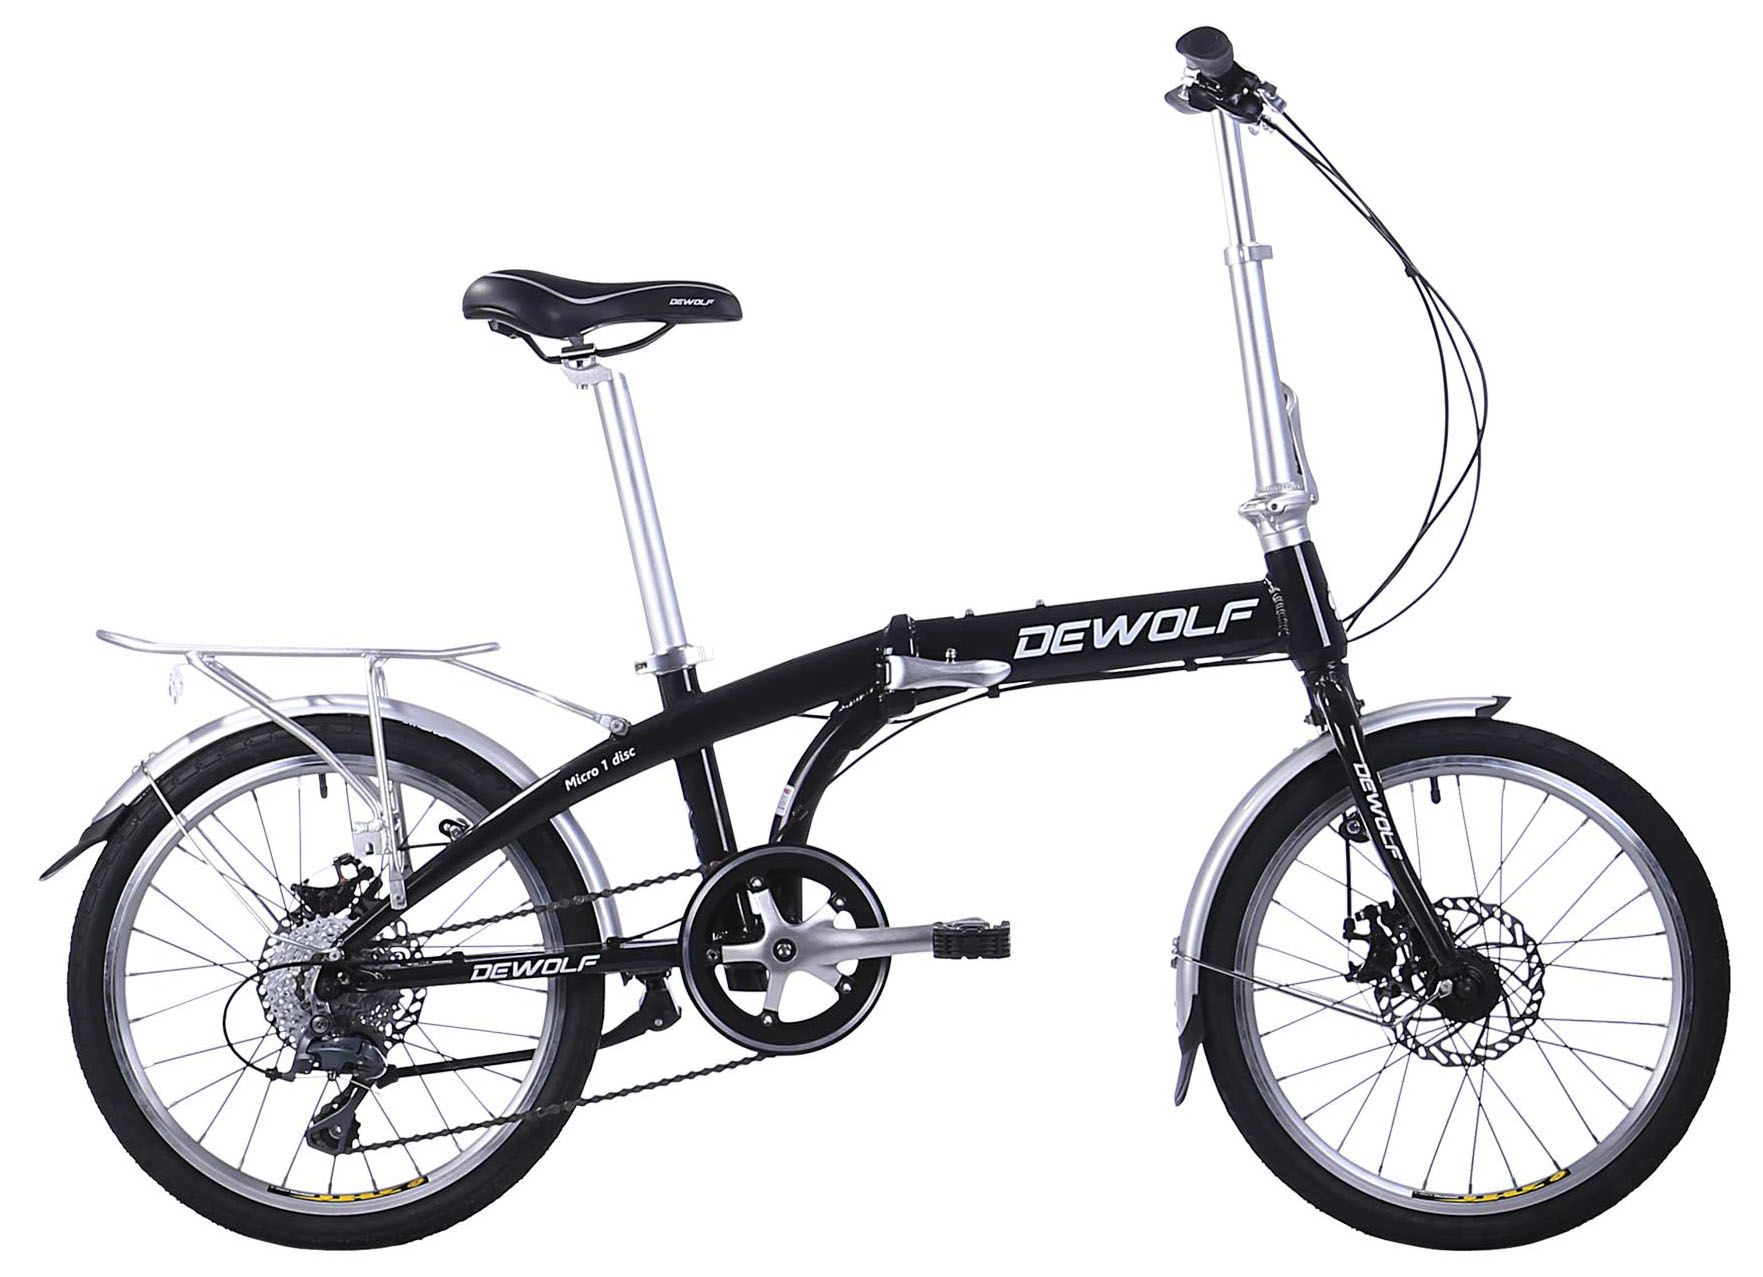  Отзывы о Складном велосипеде Dewolf Micro 1 2018